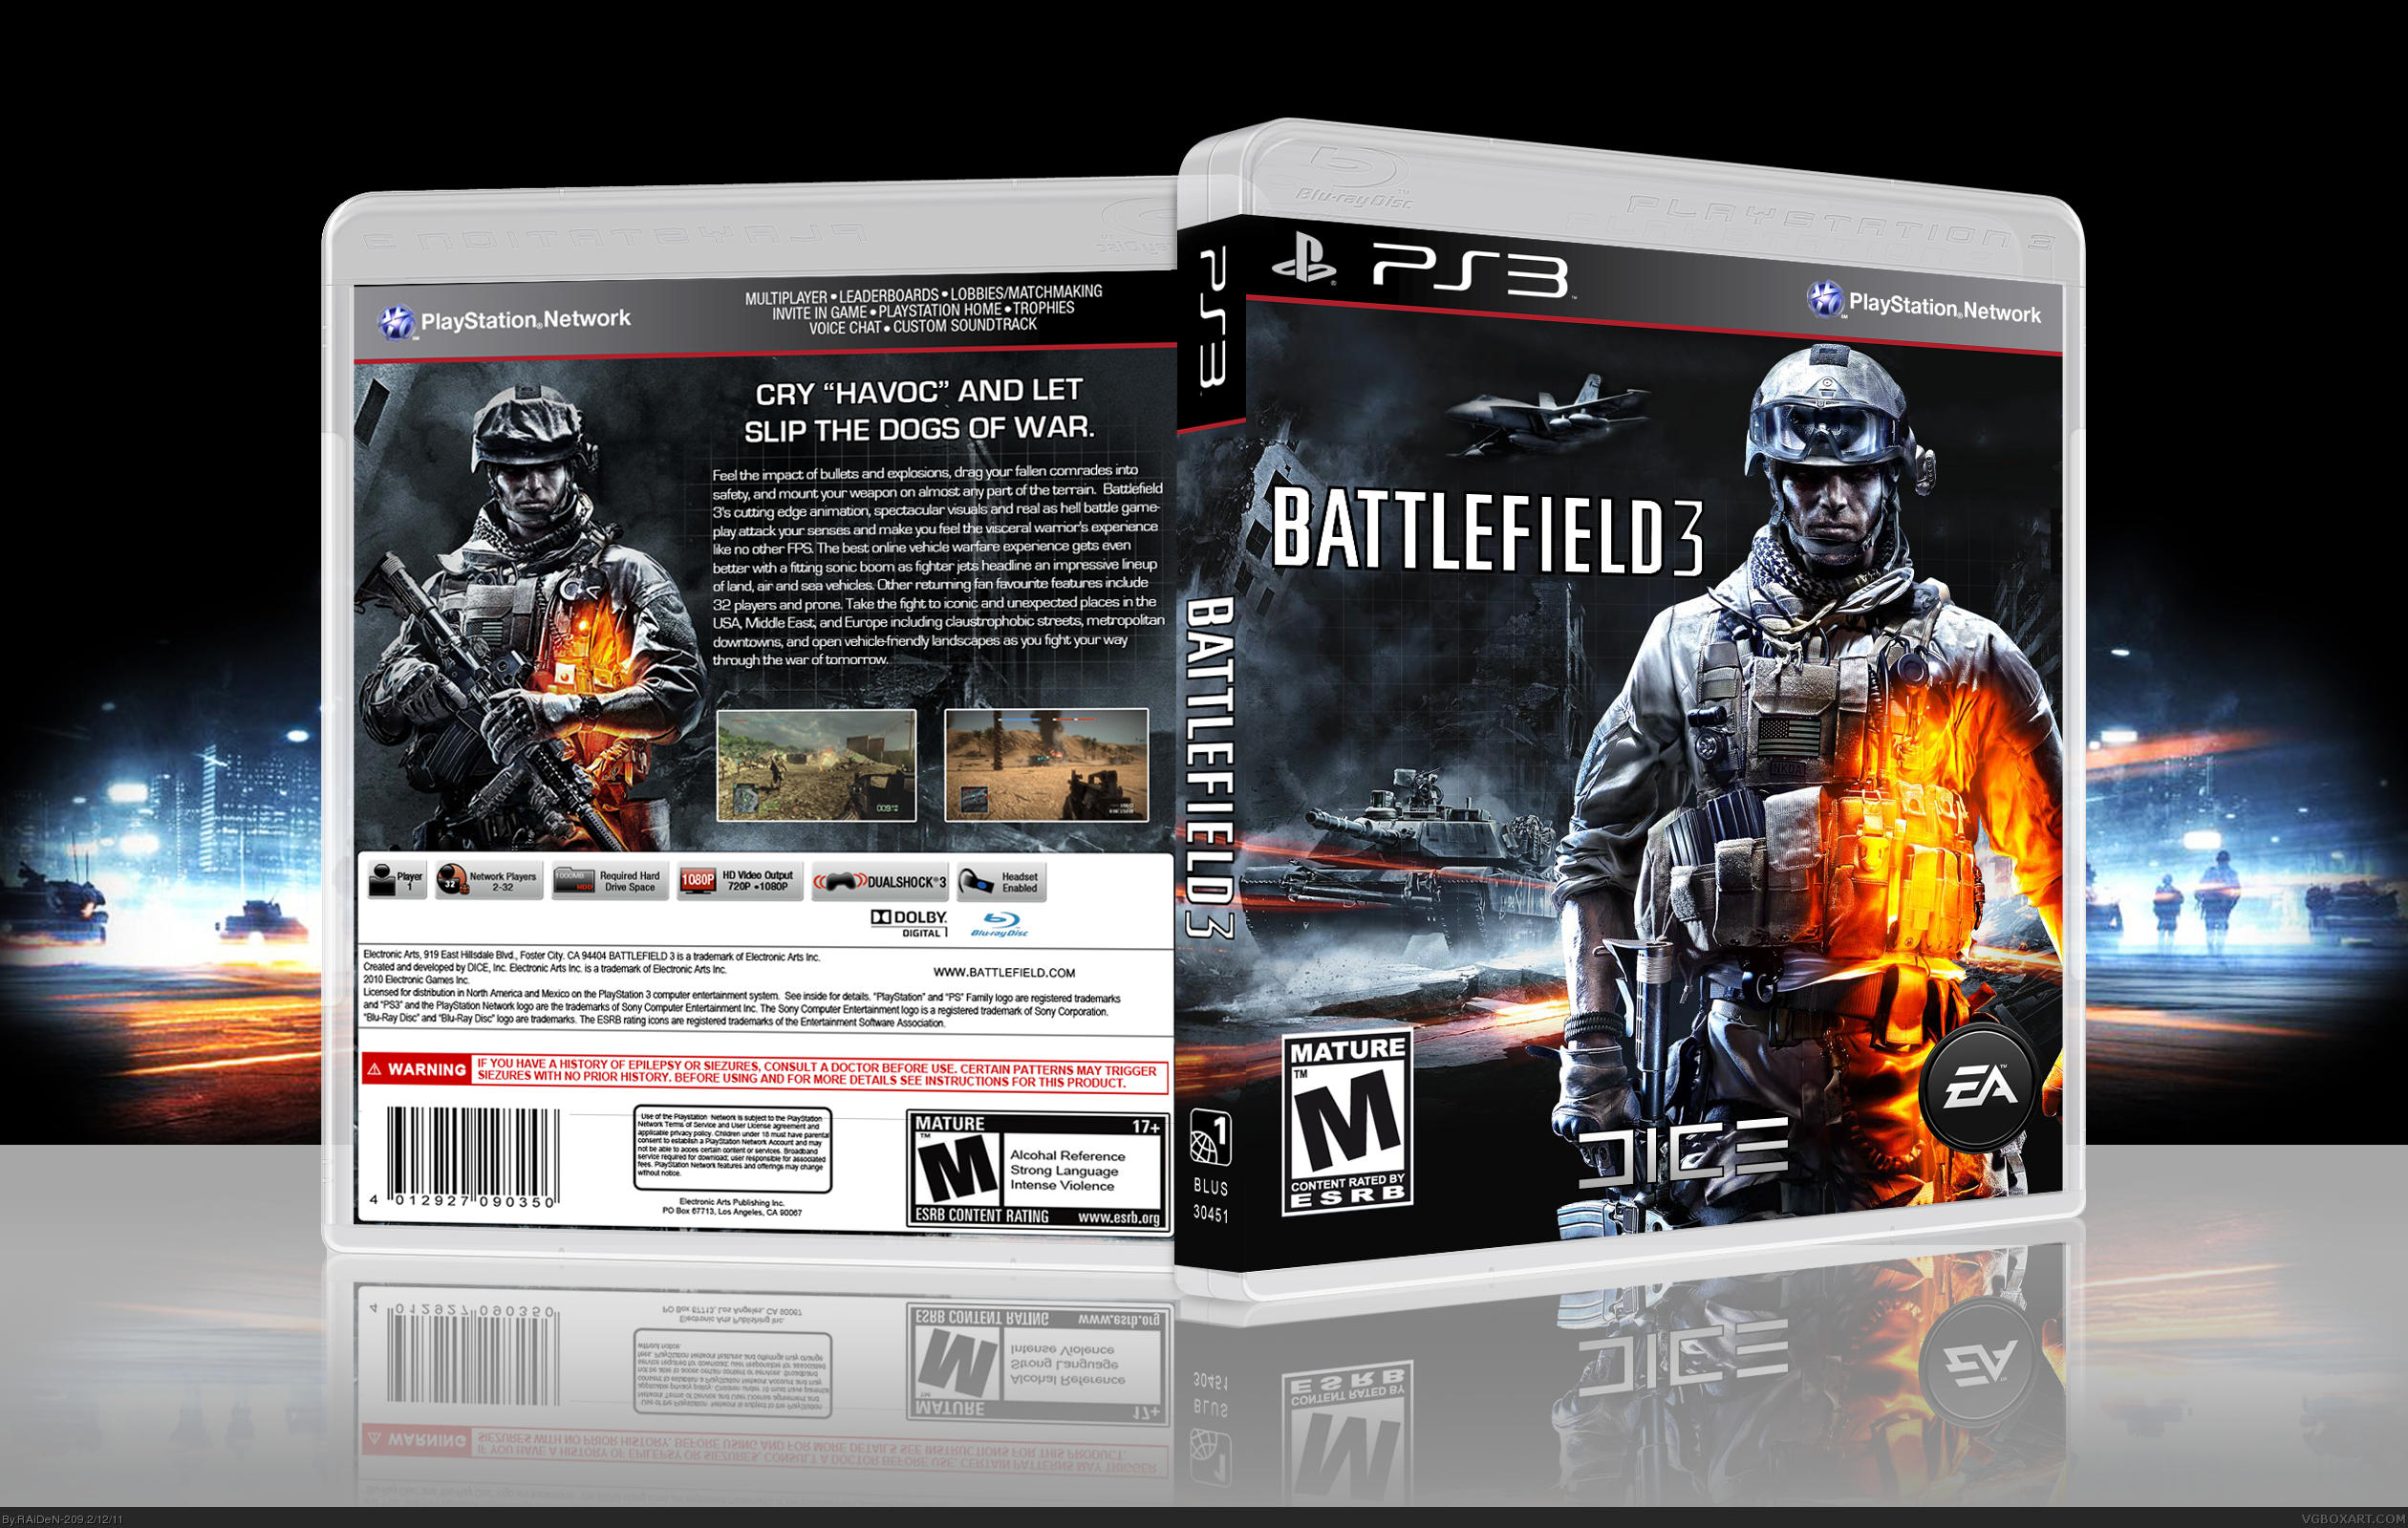 Battlefield 3 PC диск. Диски ПС 3 бателфилд 3. Диск бателфилд 3 ПС 4. Battlefield 3 ps3 обложка диска.